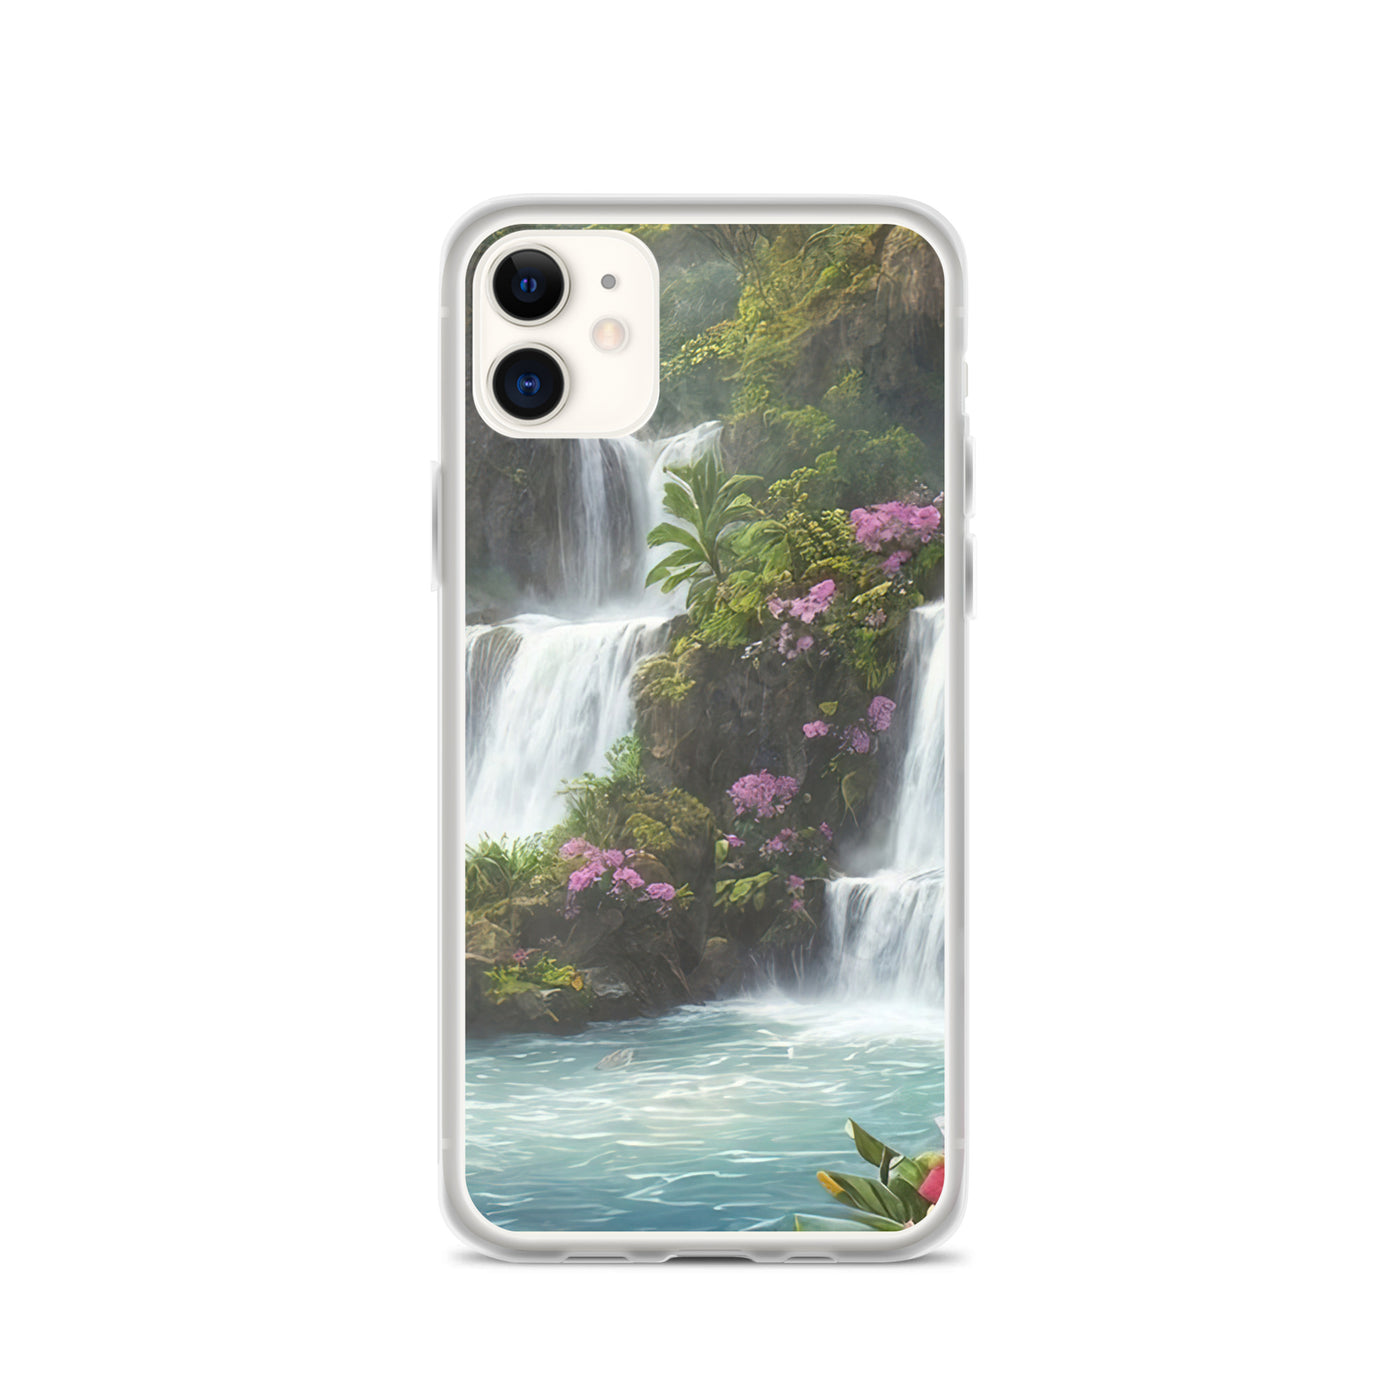 Wasserfall im Wald und Blumen - Schöne Malerei - iPhone Schutzhülle (durchsichtig) camping xxx iPhone 11